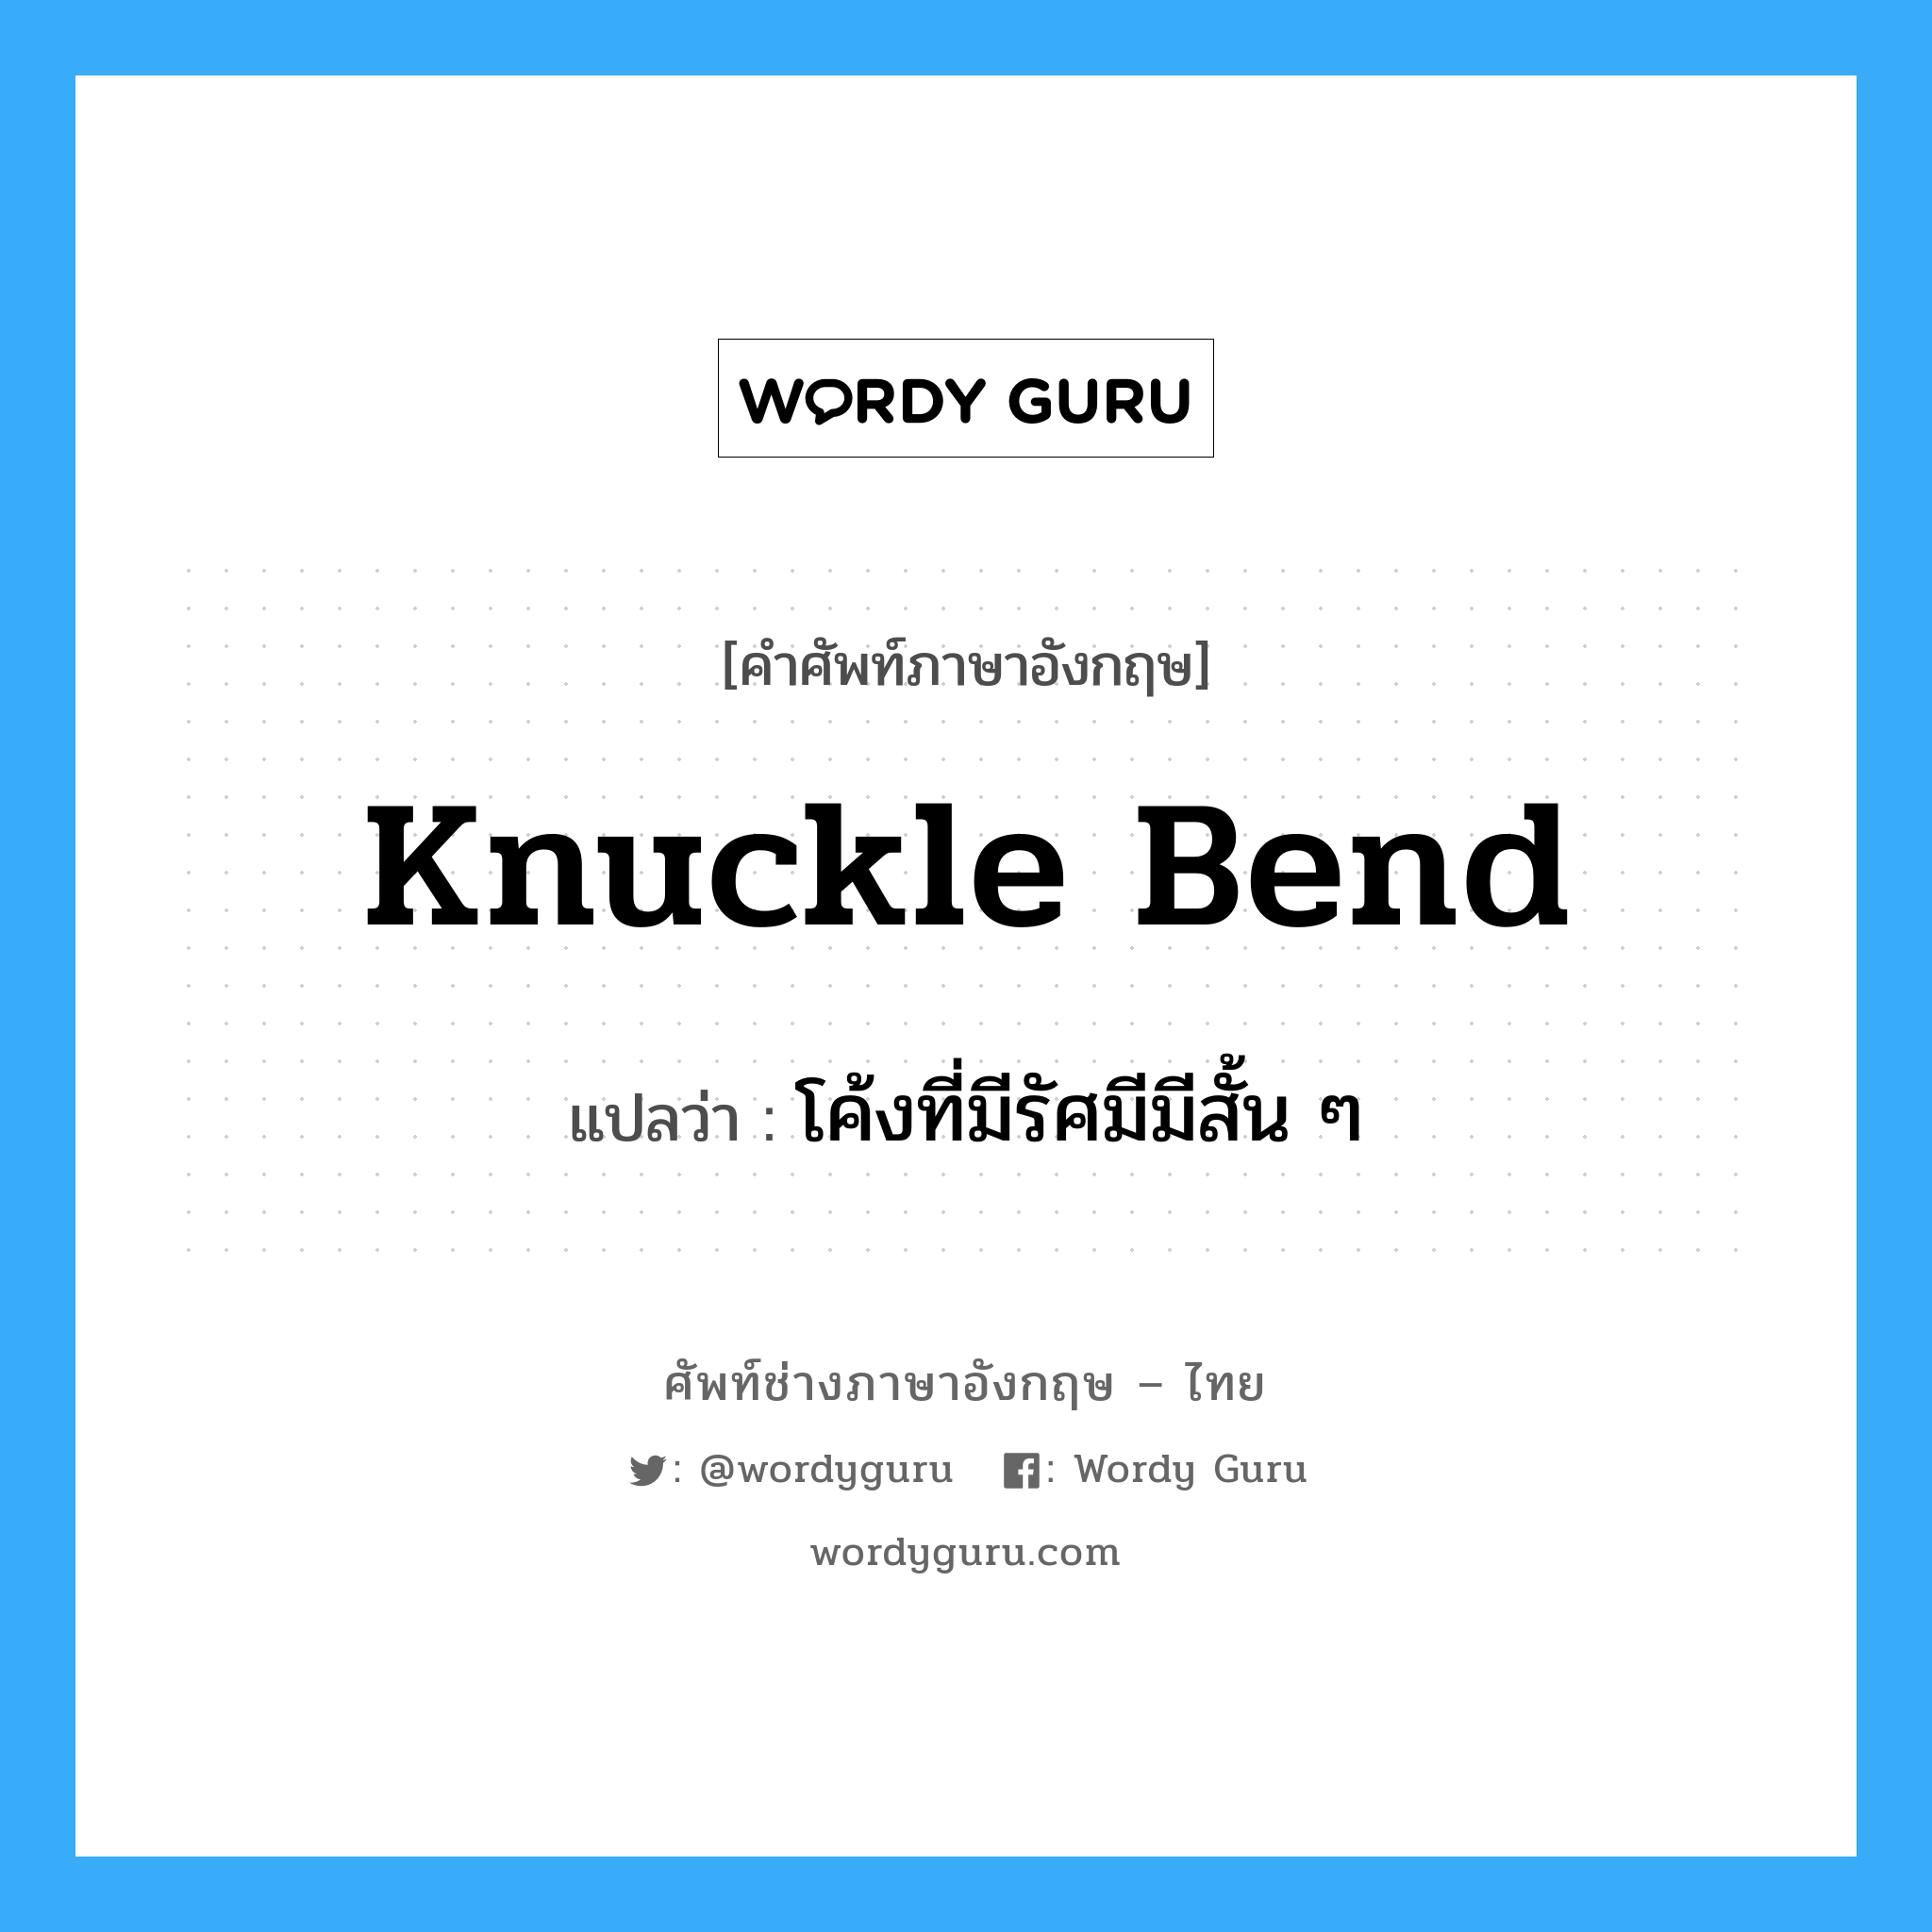 โค้งที่มีรัศมีมีสั้น ๆ ภาษาอังกฤษ?, คำศัพท์ช่างภาษาอังกฤษ - ไทย โค้งที่มีรัศมีมีสั้น ๆ คำศัพท์ภาษาอังกฤษ โค้งที่มีรัศมีมีสั้น ๆ แปลว่า knuckle bend